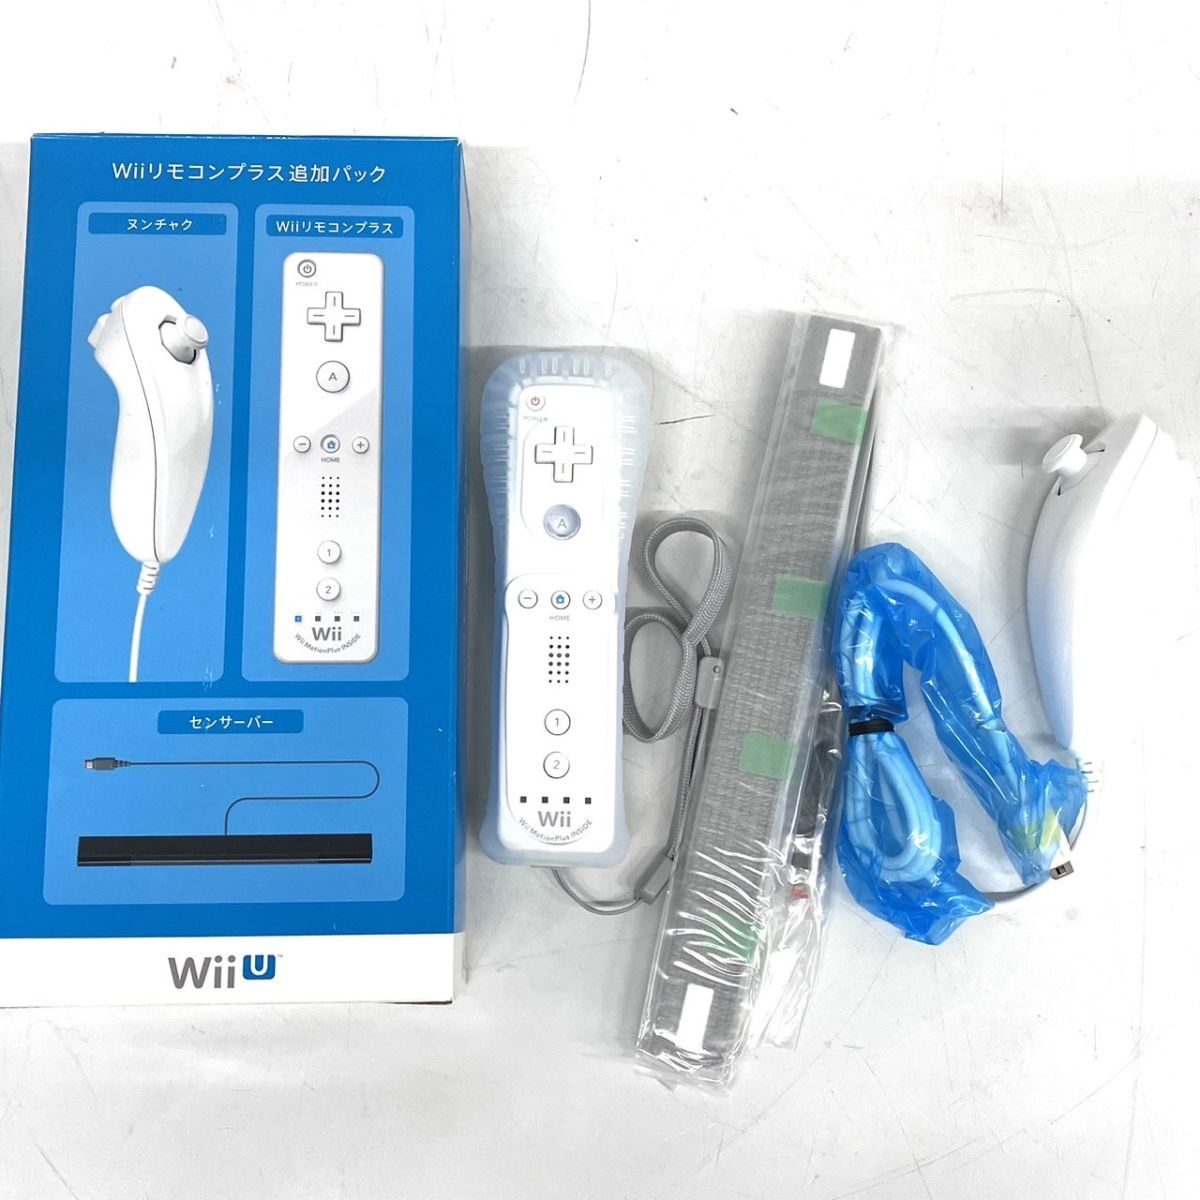 D015-I55-242 任天堂 Wii リモコン 追加パック ヌンチャク RVL-004/Wiiリモコンプラス RVL-36/センサーバー RVL-004 他 箱付き ①_画像1